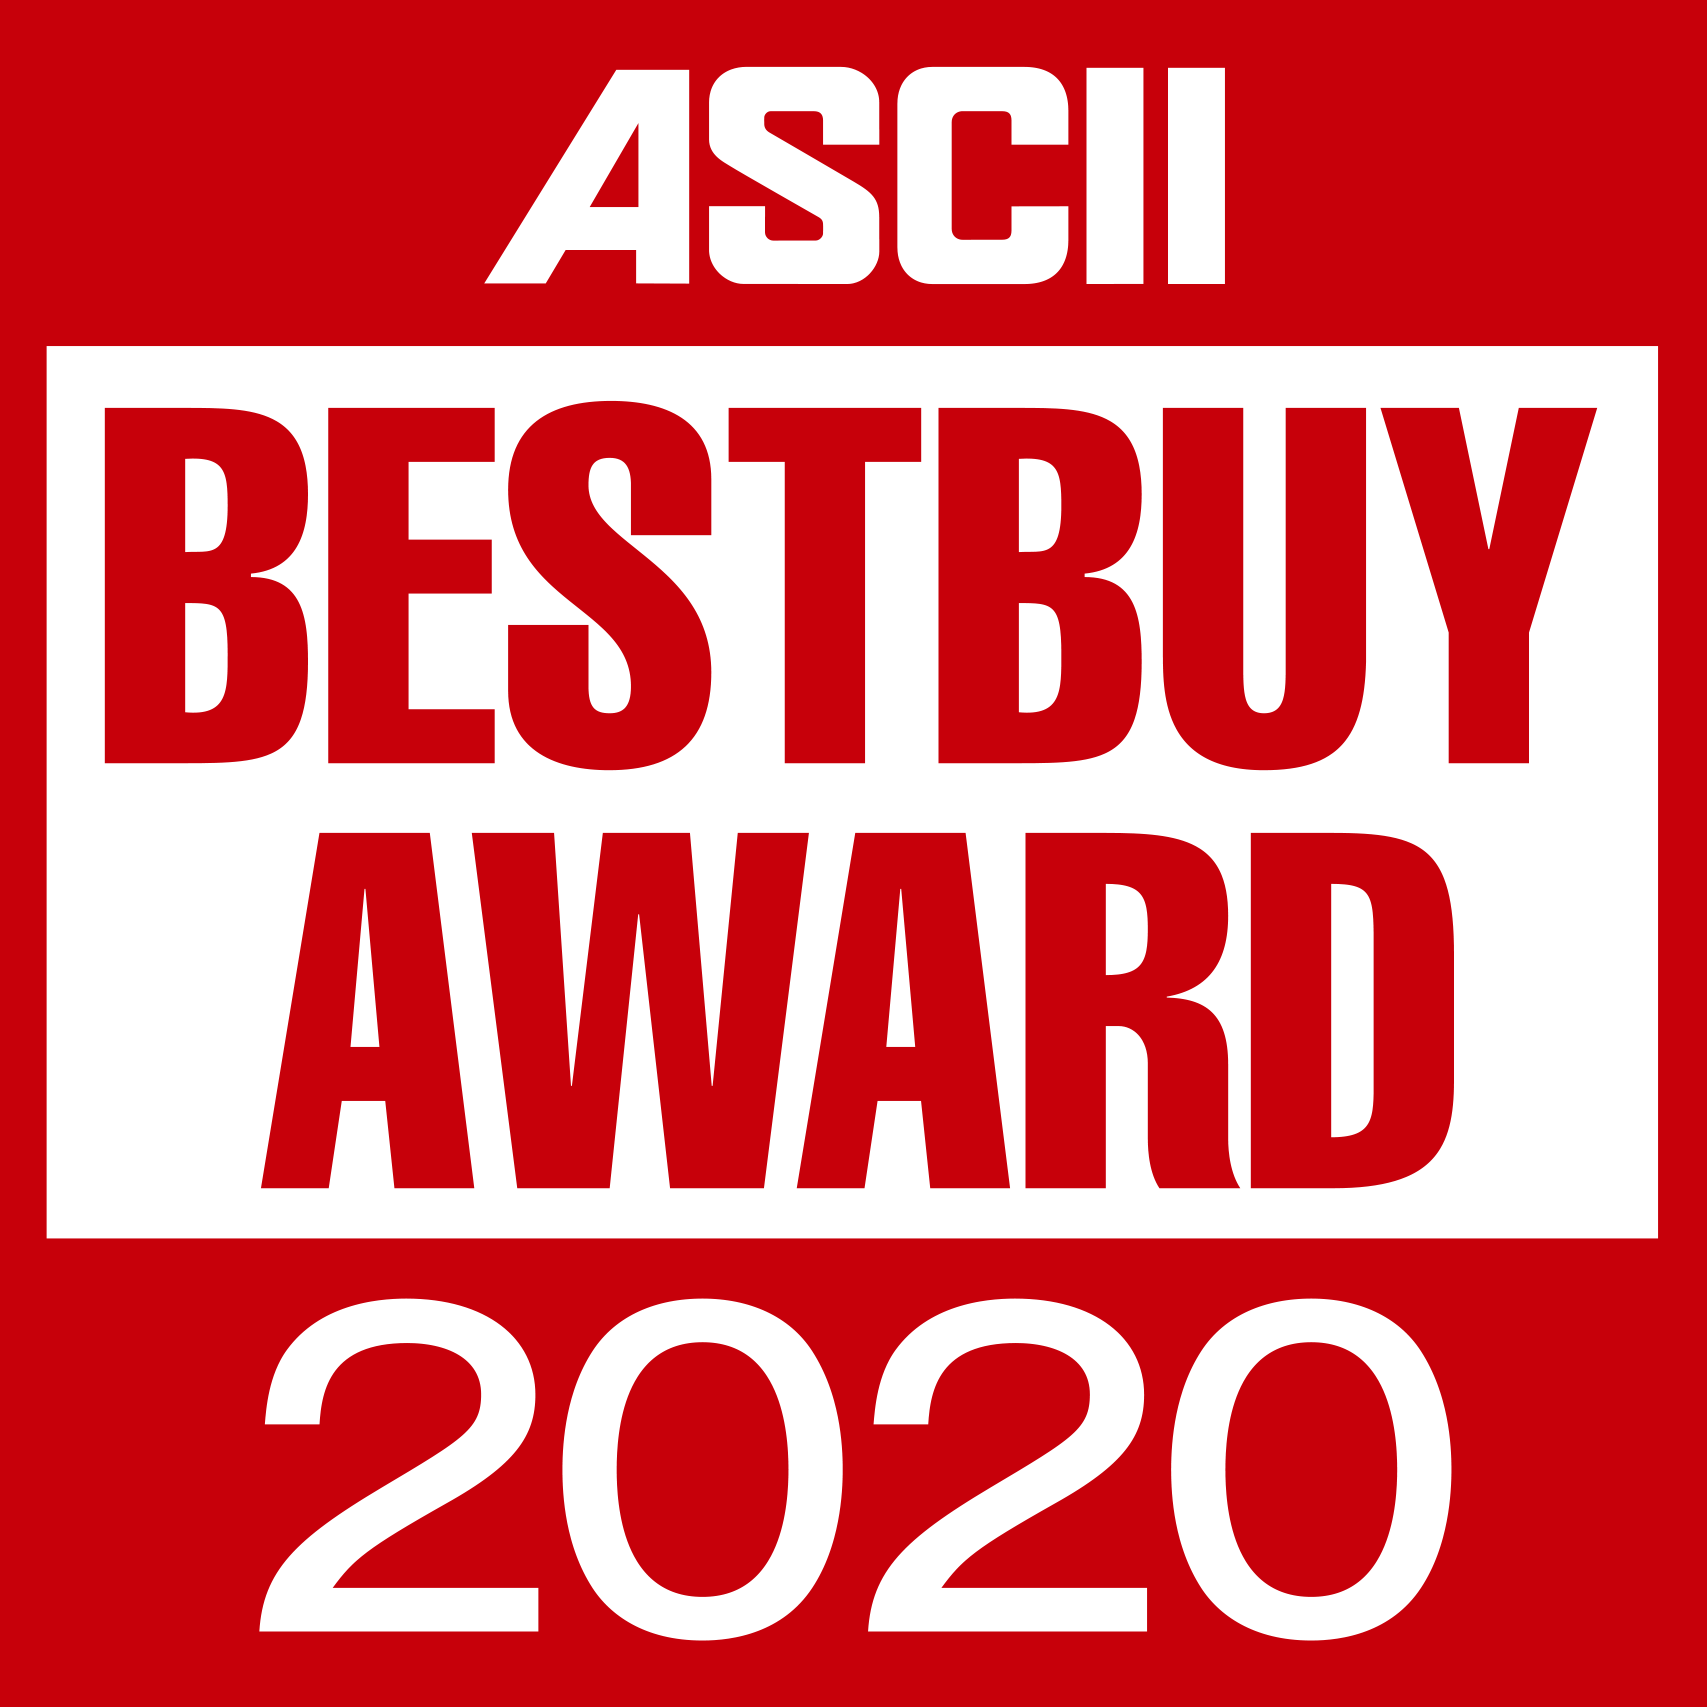 ASCII BESTBUY 2020